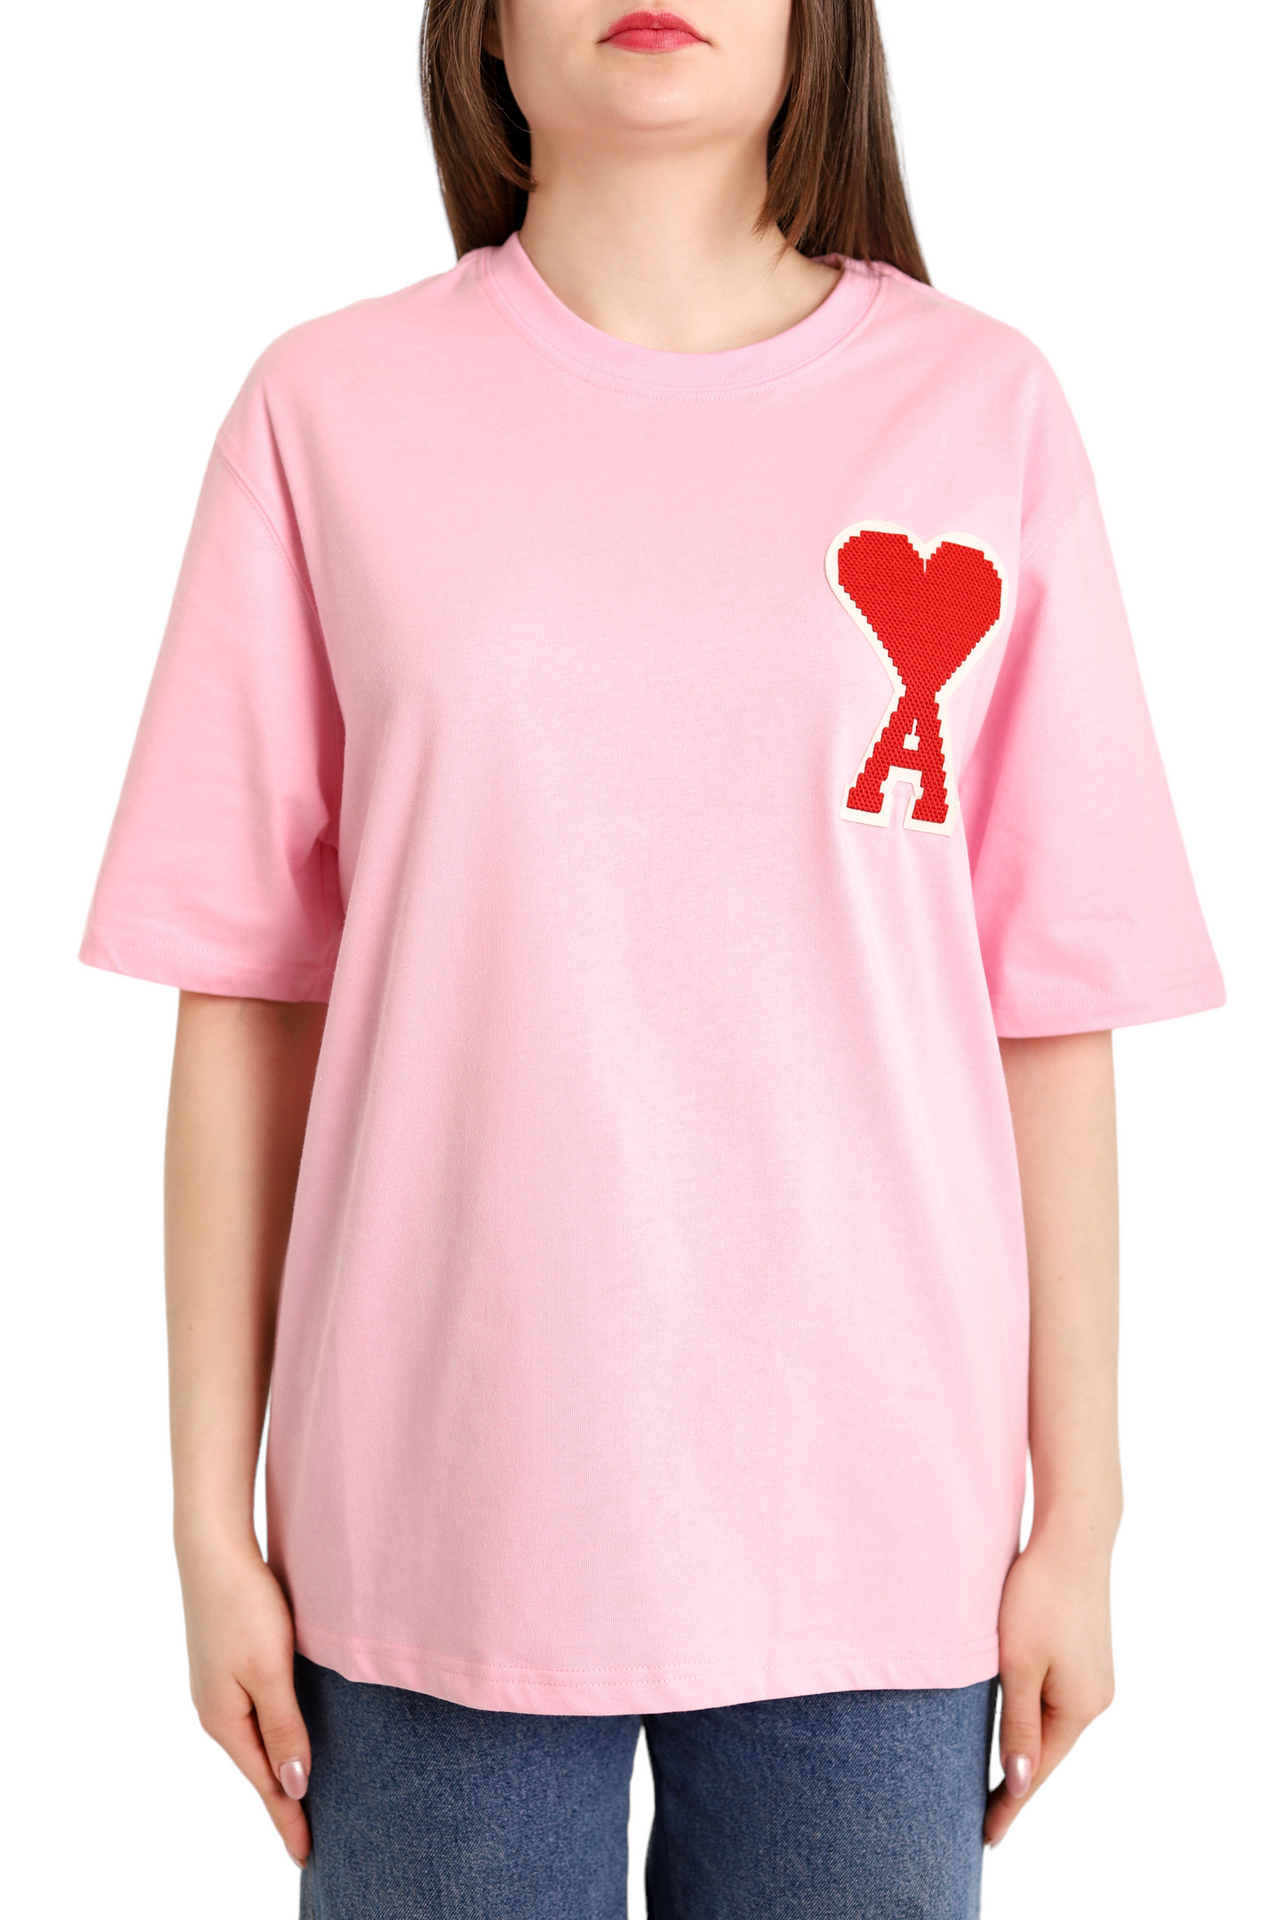 AMI Paris Ami De Coeur T-Shirt Patch Pink Red Heart